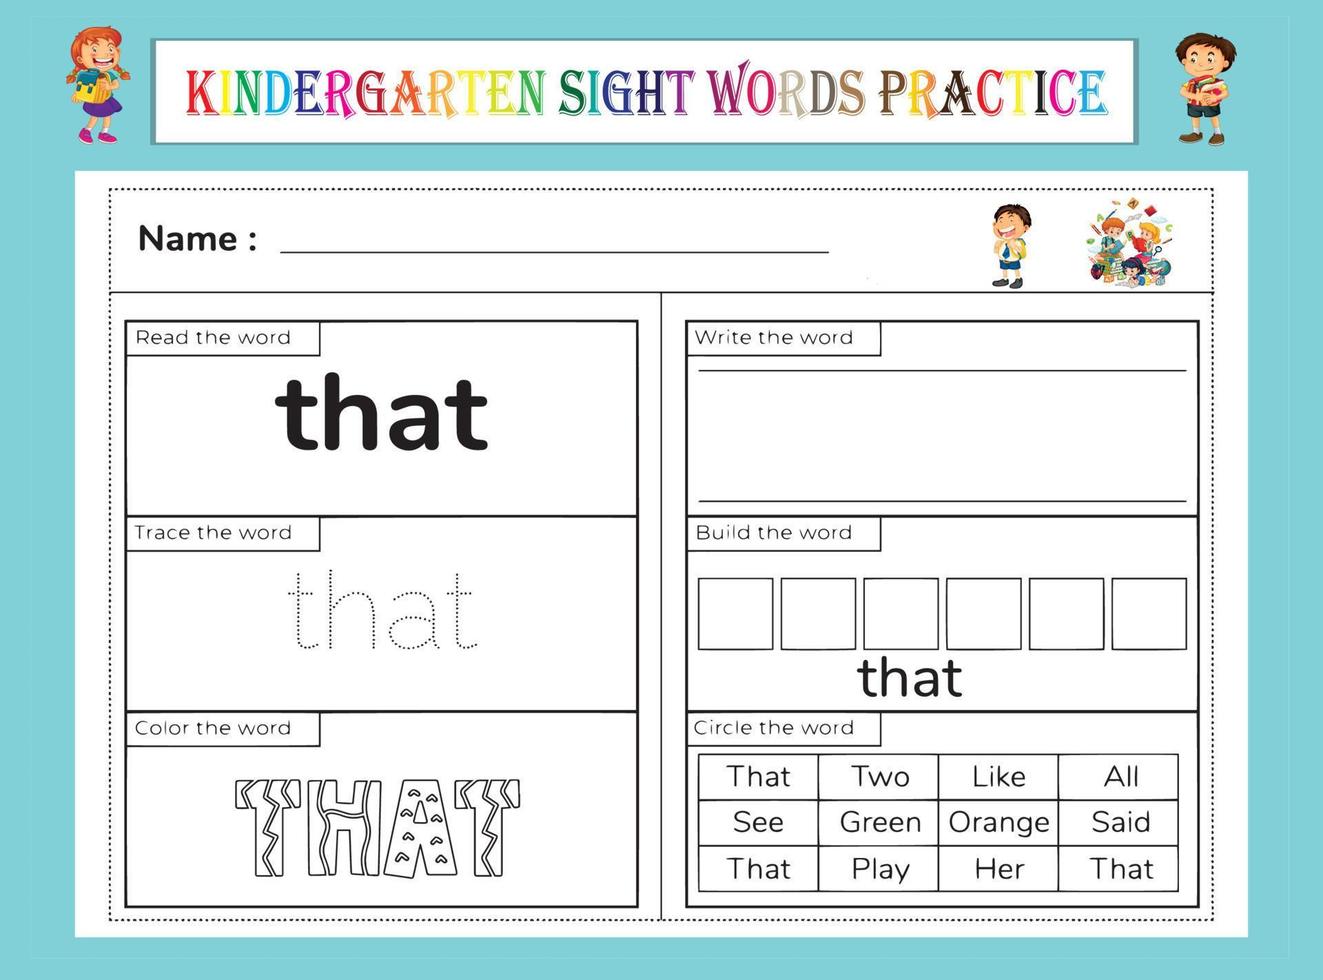 kleuterschool zicht woorden oefenen werkblad vector